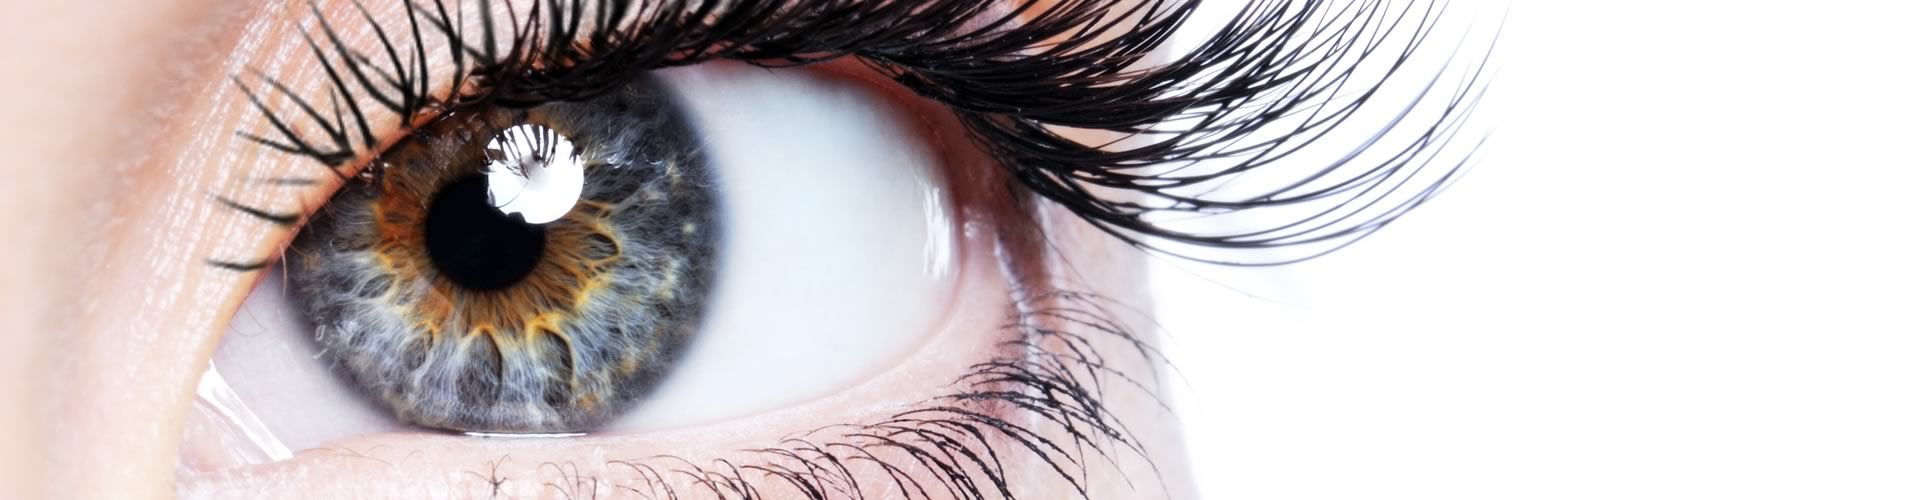 EMDR - Desensibilización y Reprocesamiento por los Movimientos Oculares